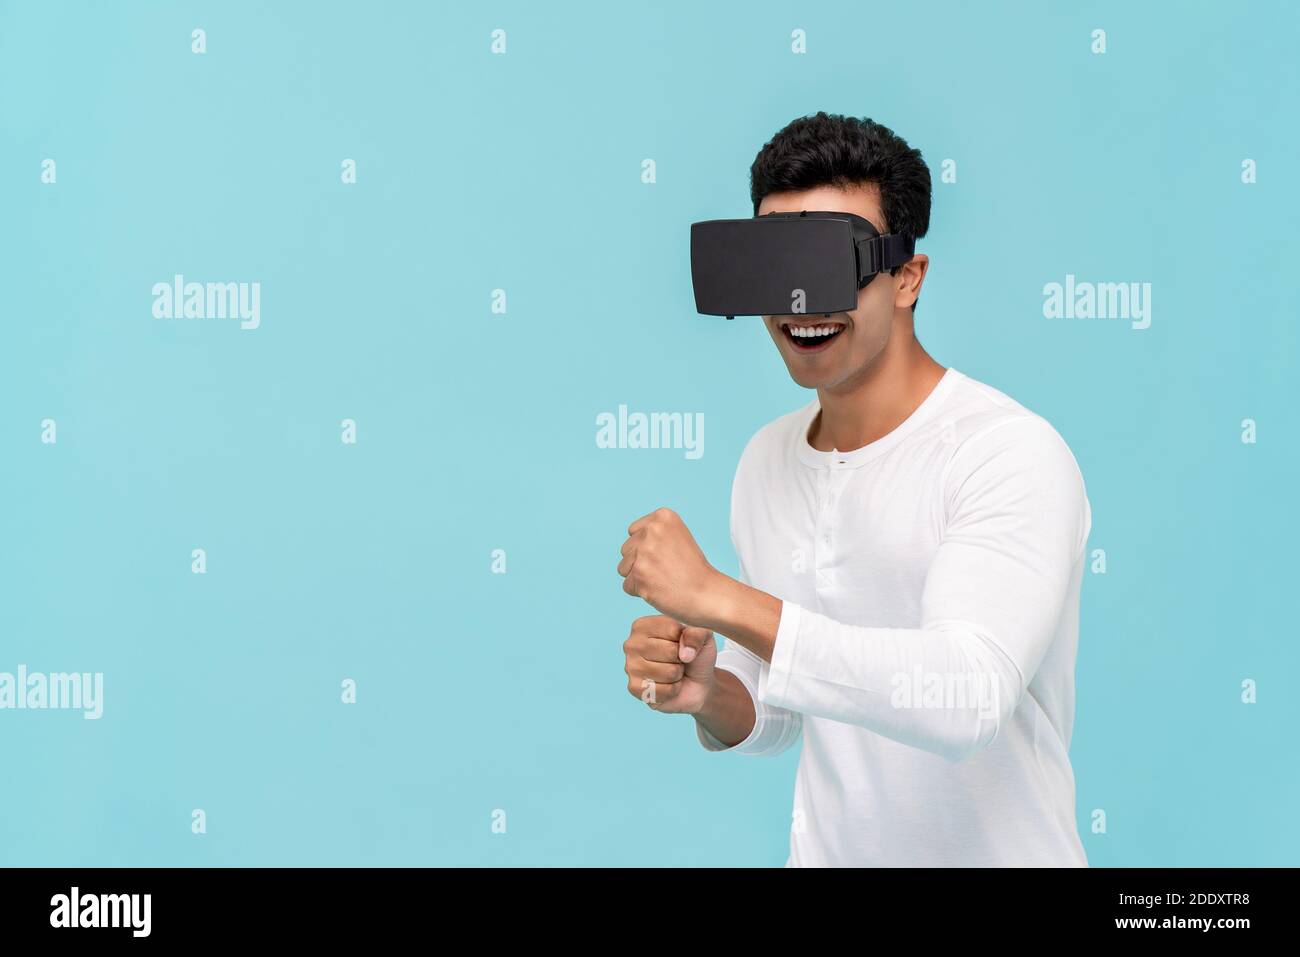 Un homme asiatique enthousiaste qui bouge tout en regardant une vidéo de simulation 3D De la réalité virtuelle ou des lunettes VR sur fond bleu clair avec espace de copie Banque D'Images